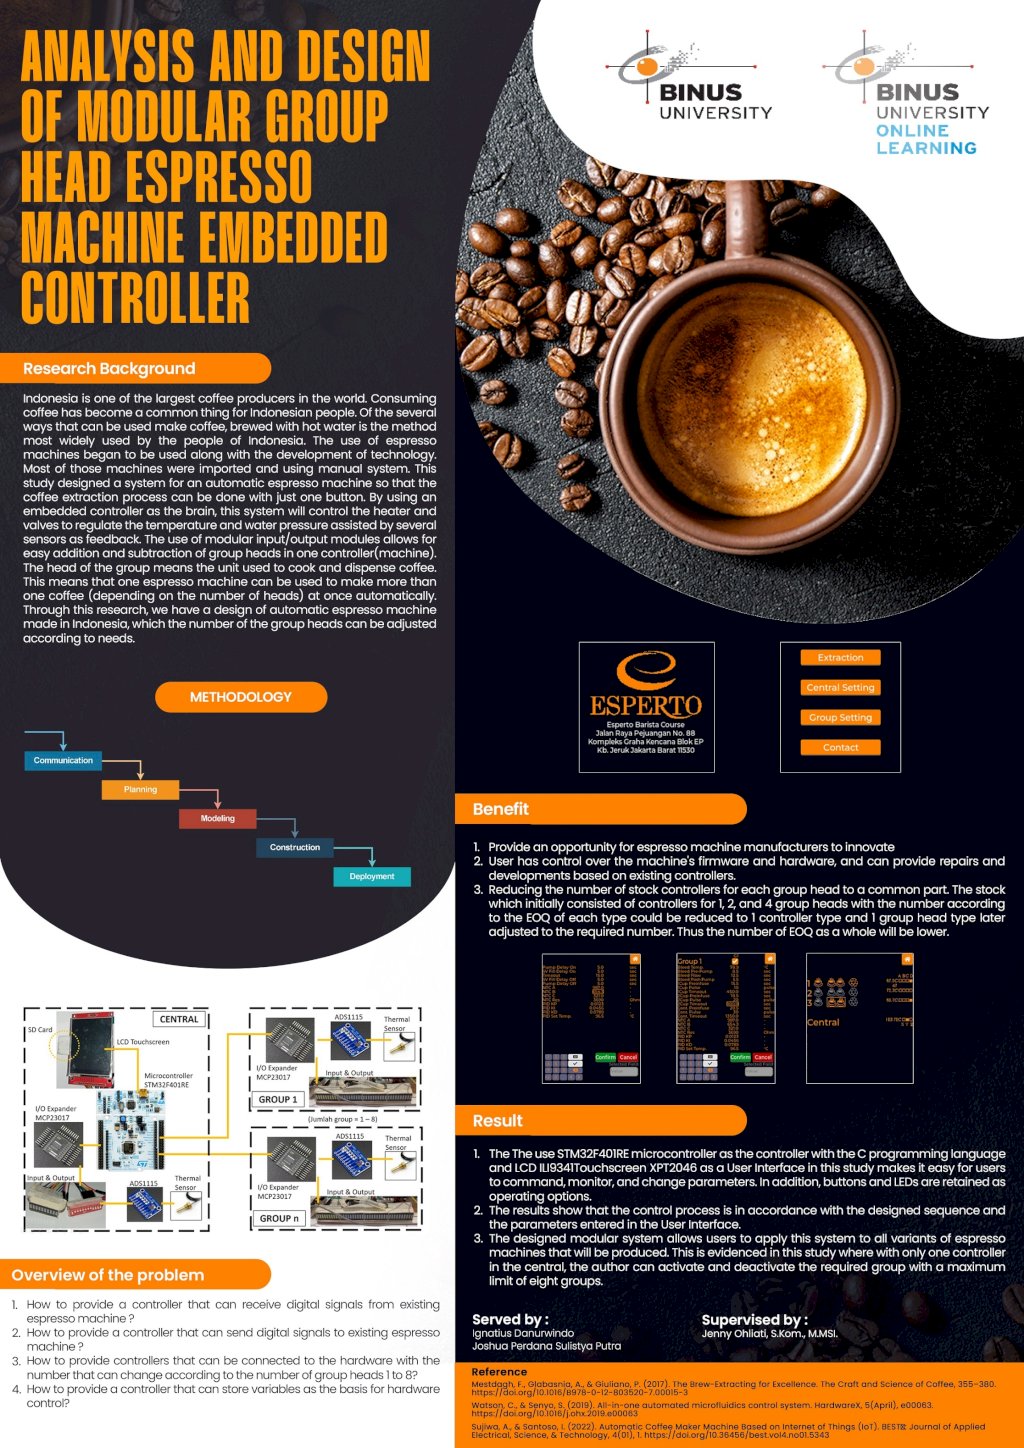 Analisis dan Perancangan Embedded Controller pada Mesin Espresso dengan Kepala Grup Modular